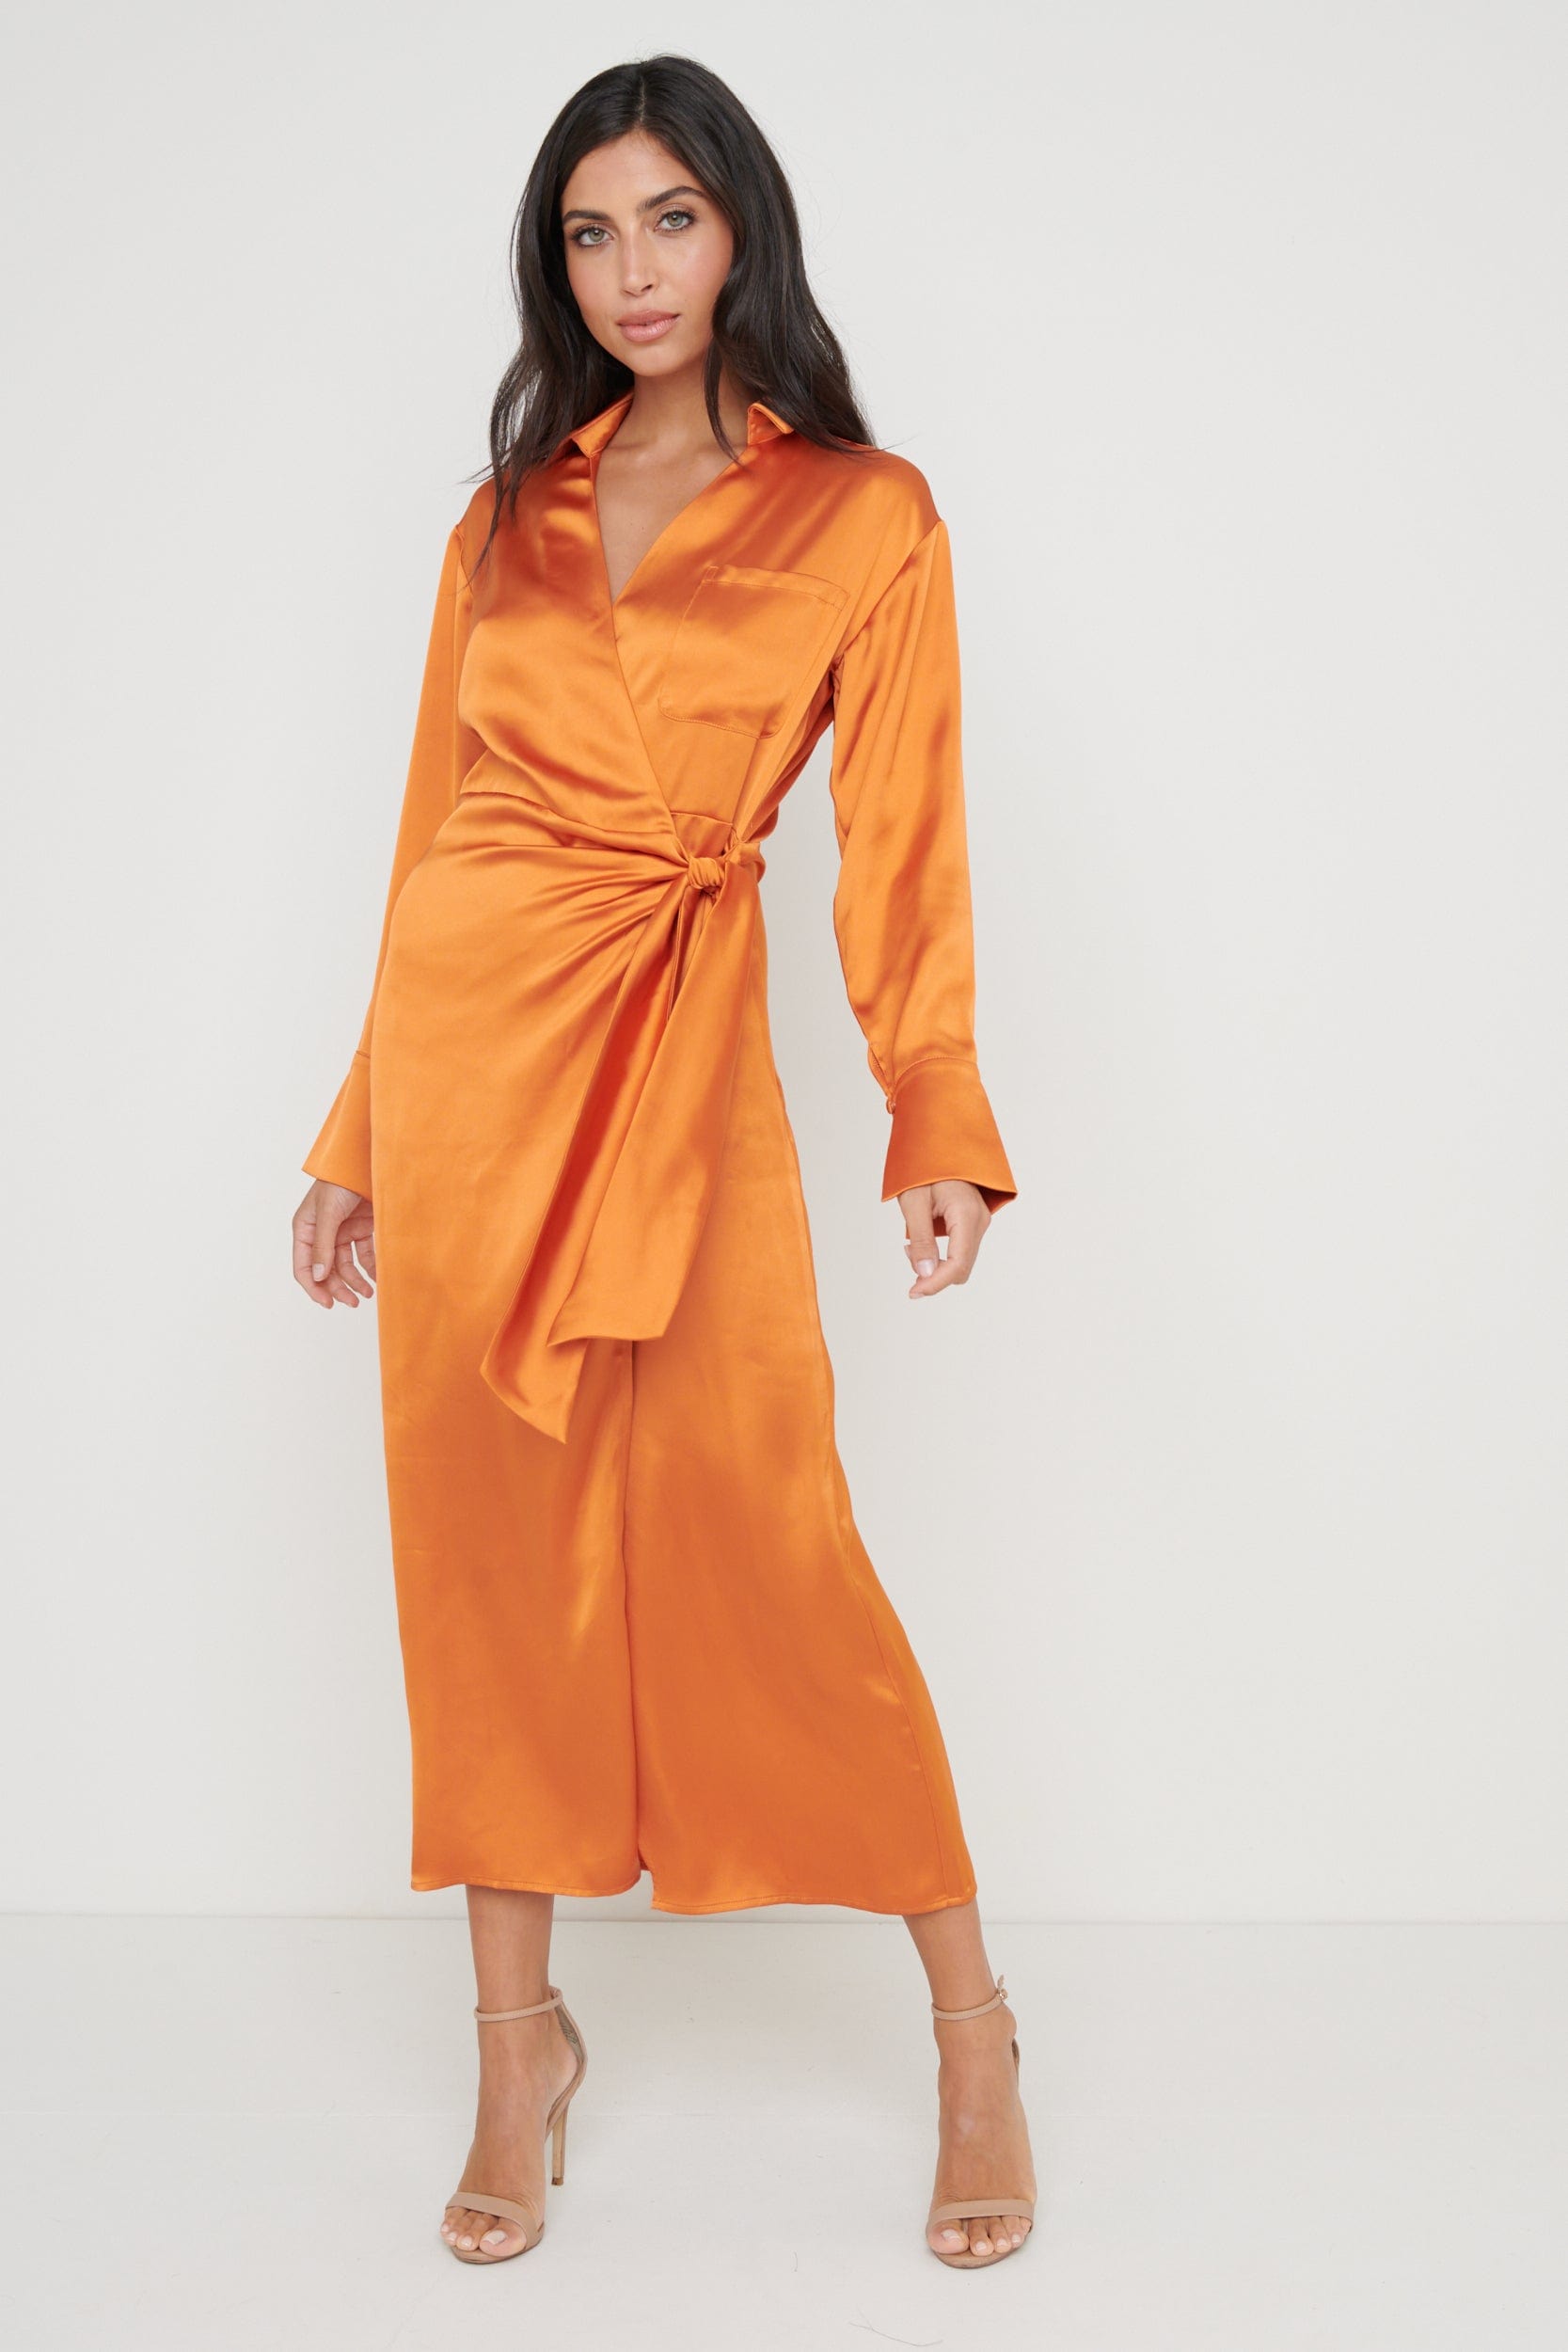 Ronnie Satin Wrap Dress - Orange, 24